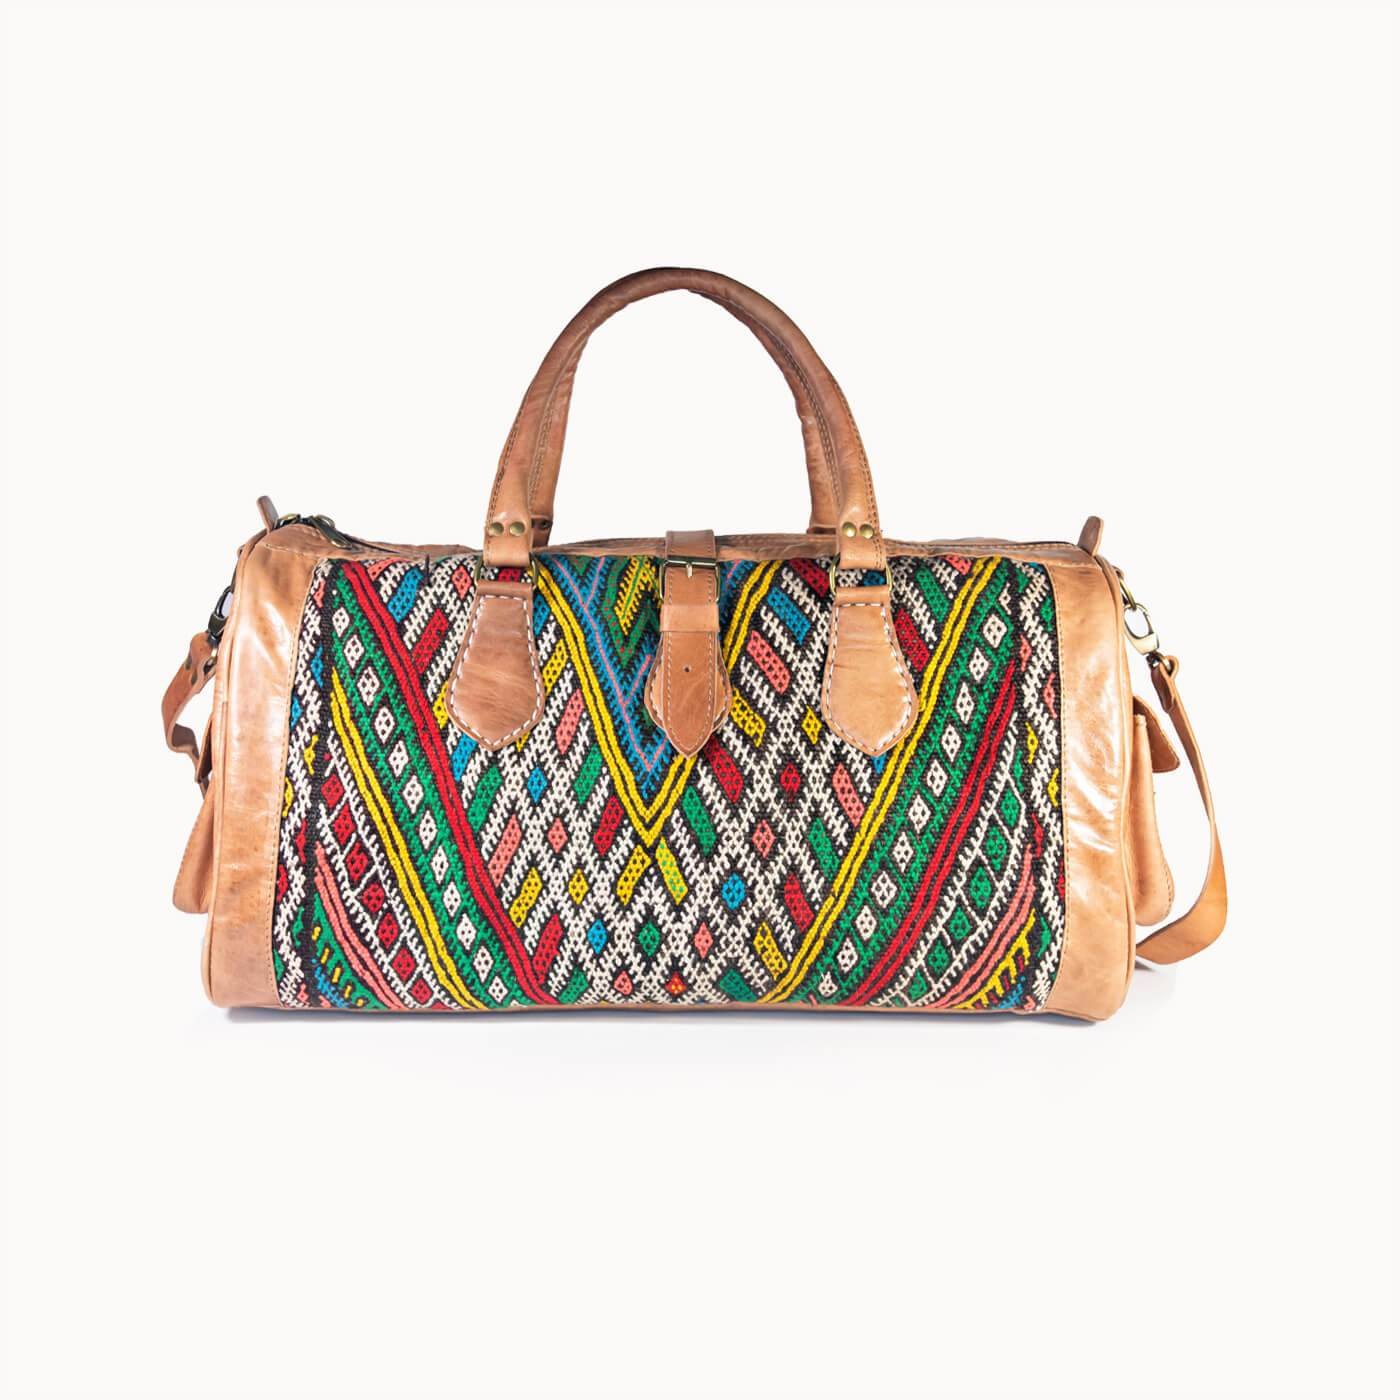 DOENYA Reisetasche 'Kilim X' aus pflanzlich gegerbtem Leder und echtem marokkanischem Kilim